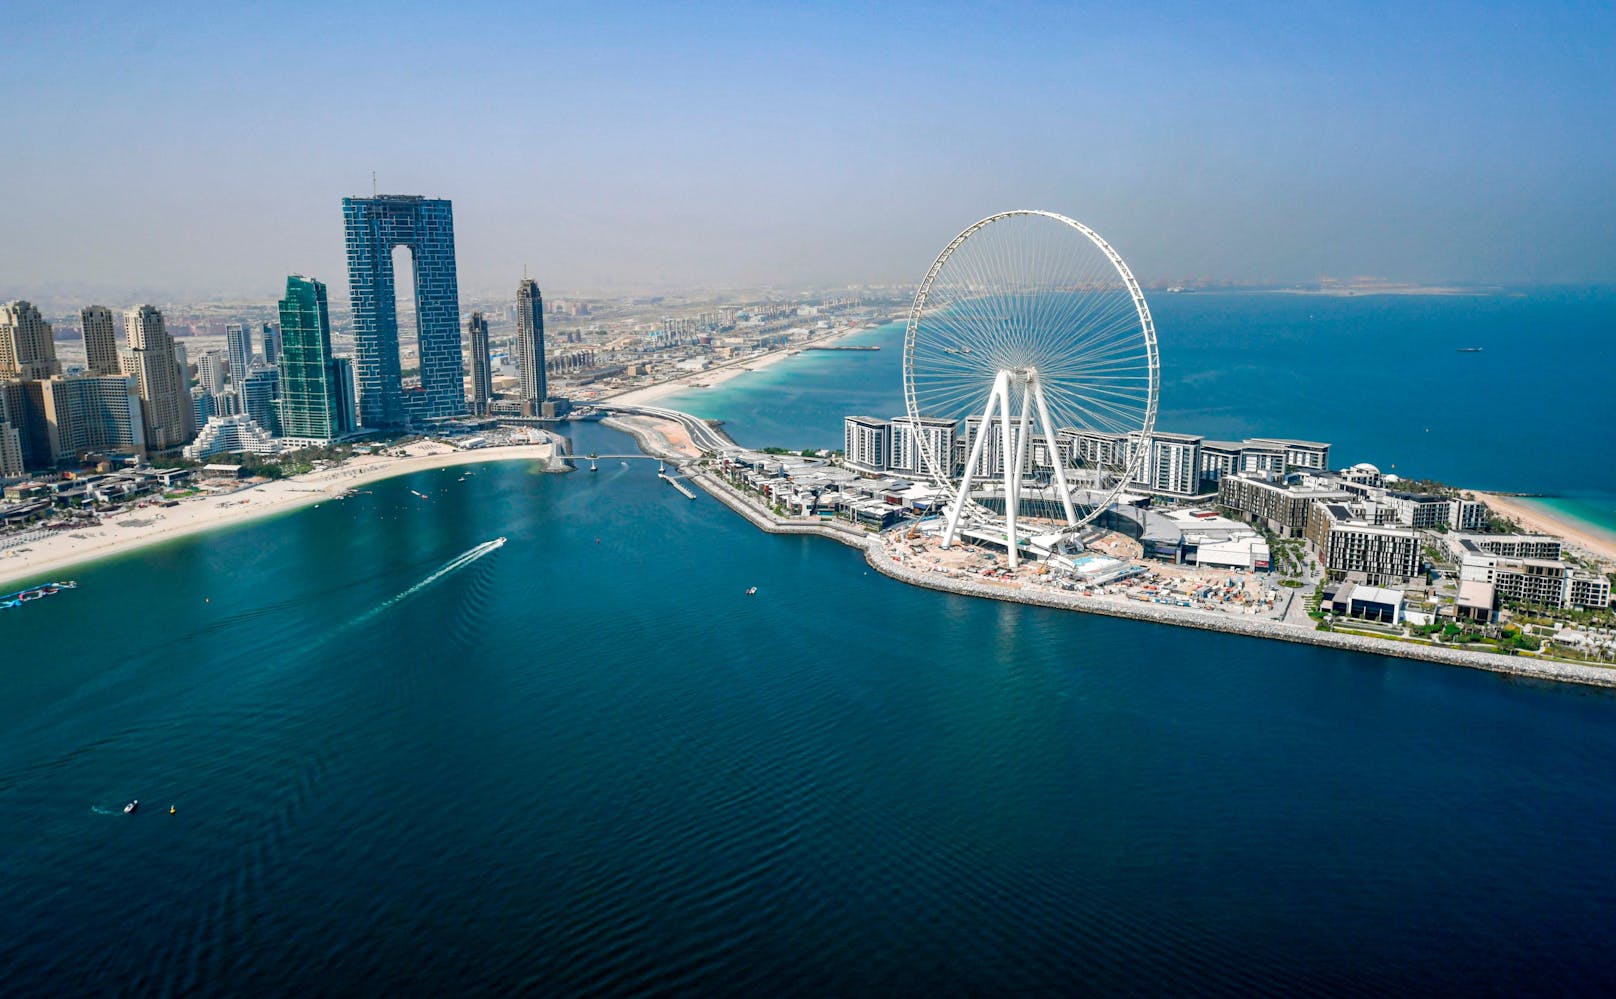 Auf der künstlich aufgeschütteten Insel&nbsp;Bluewaters Island begann der Bau des "Ain Dubai"&nbsp;("Das Auge von Dubai").&nbsp;